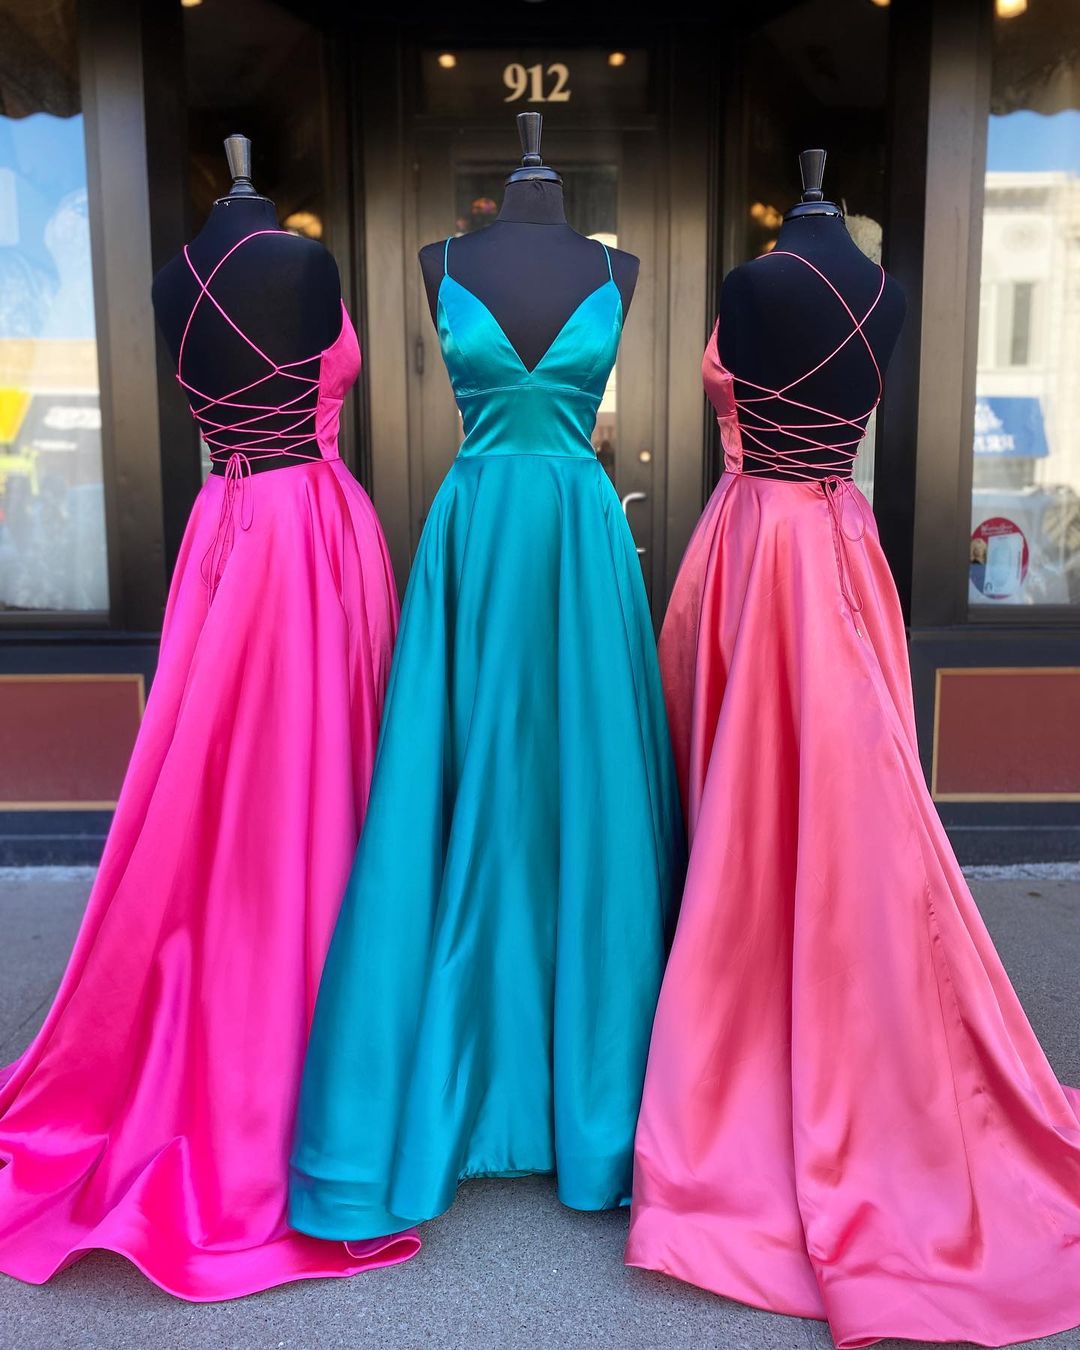 vigocouture-Satin A-Line Spaghetti Strap Prom Dress 20851-Prom Dresses-vigocouture-Pink-US2-